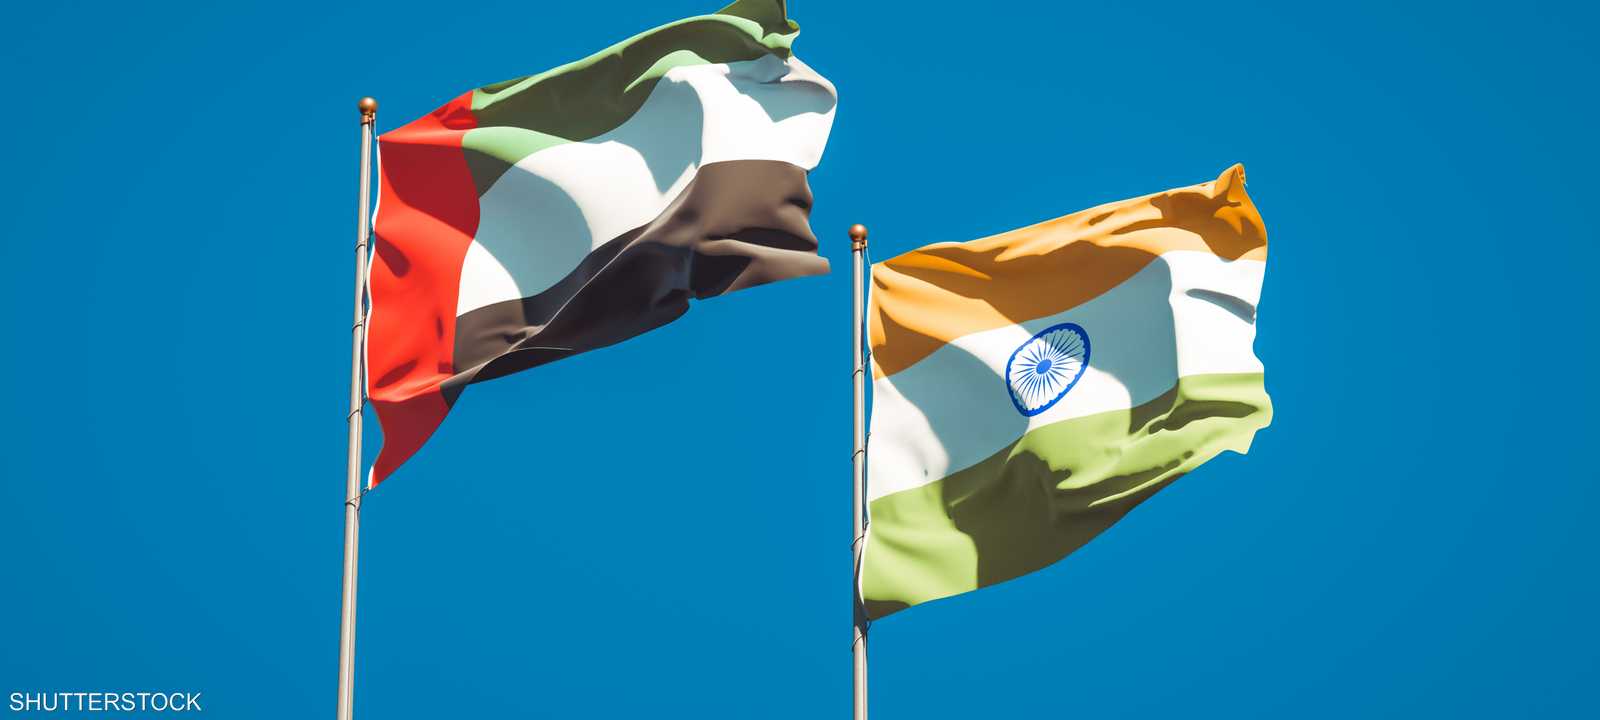 الإمارات والهند - اقتصاد